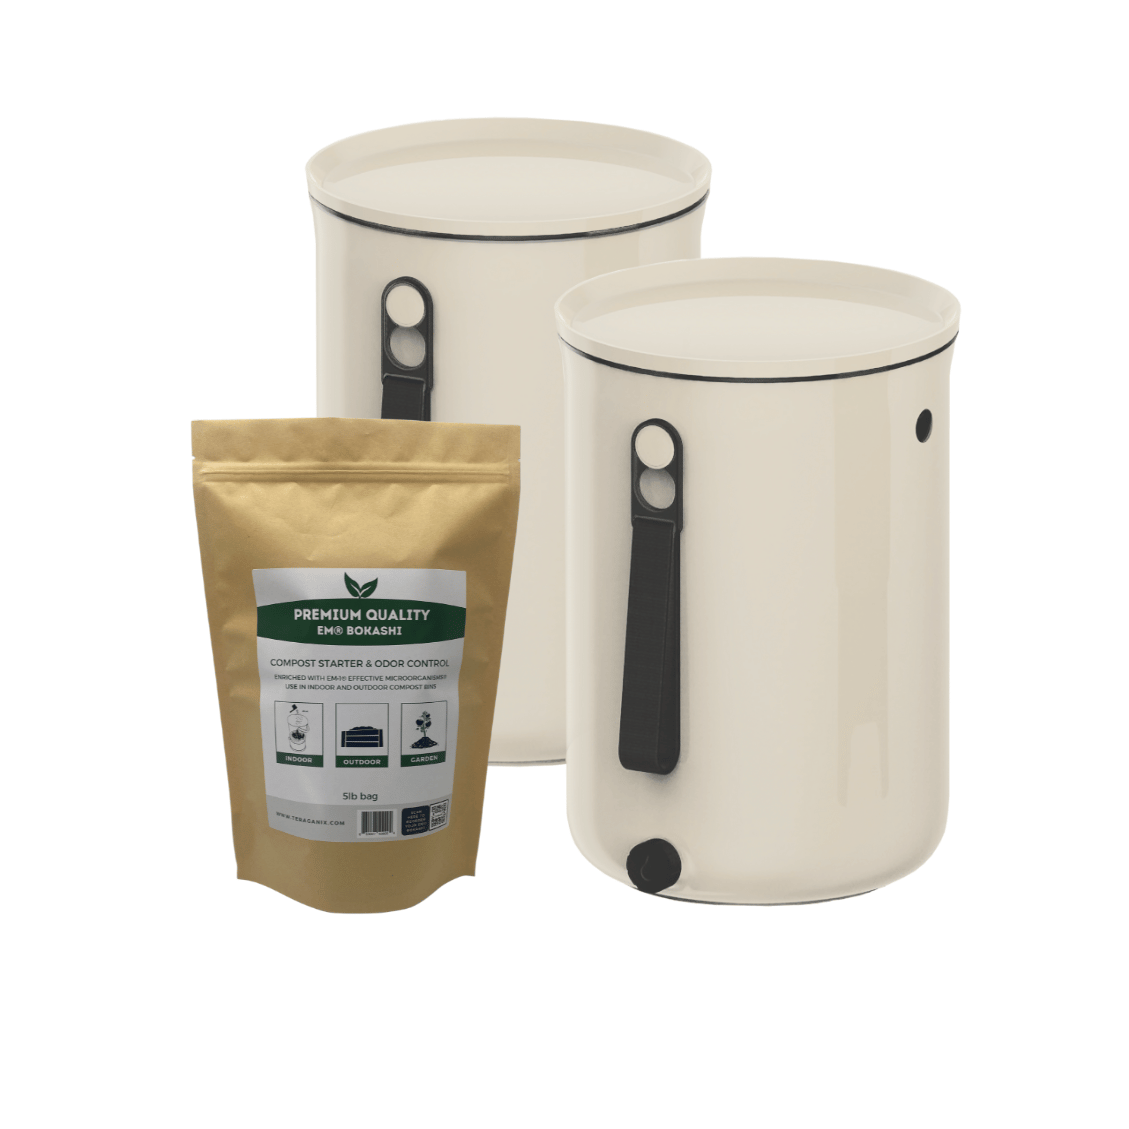 TeraGanix Bokashi Compost Bin Set of two buckets + 2 lb bag Bokashi / Cream Bokashi Kitchen Compost Bin, 2.5 gal